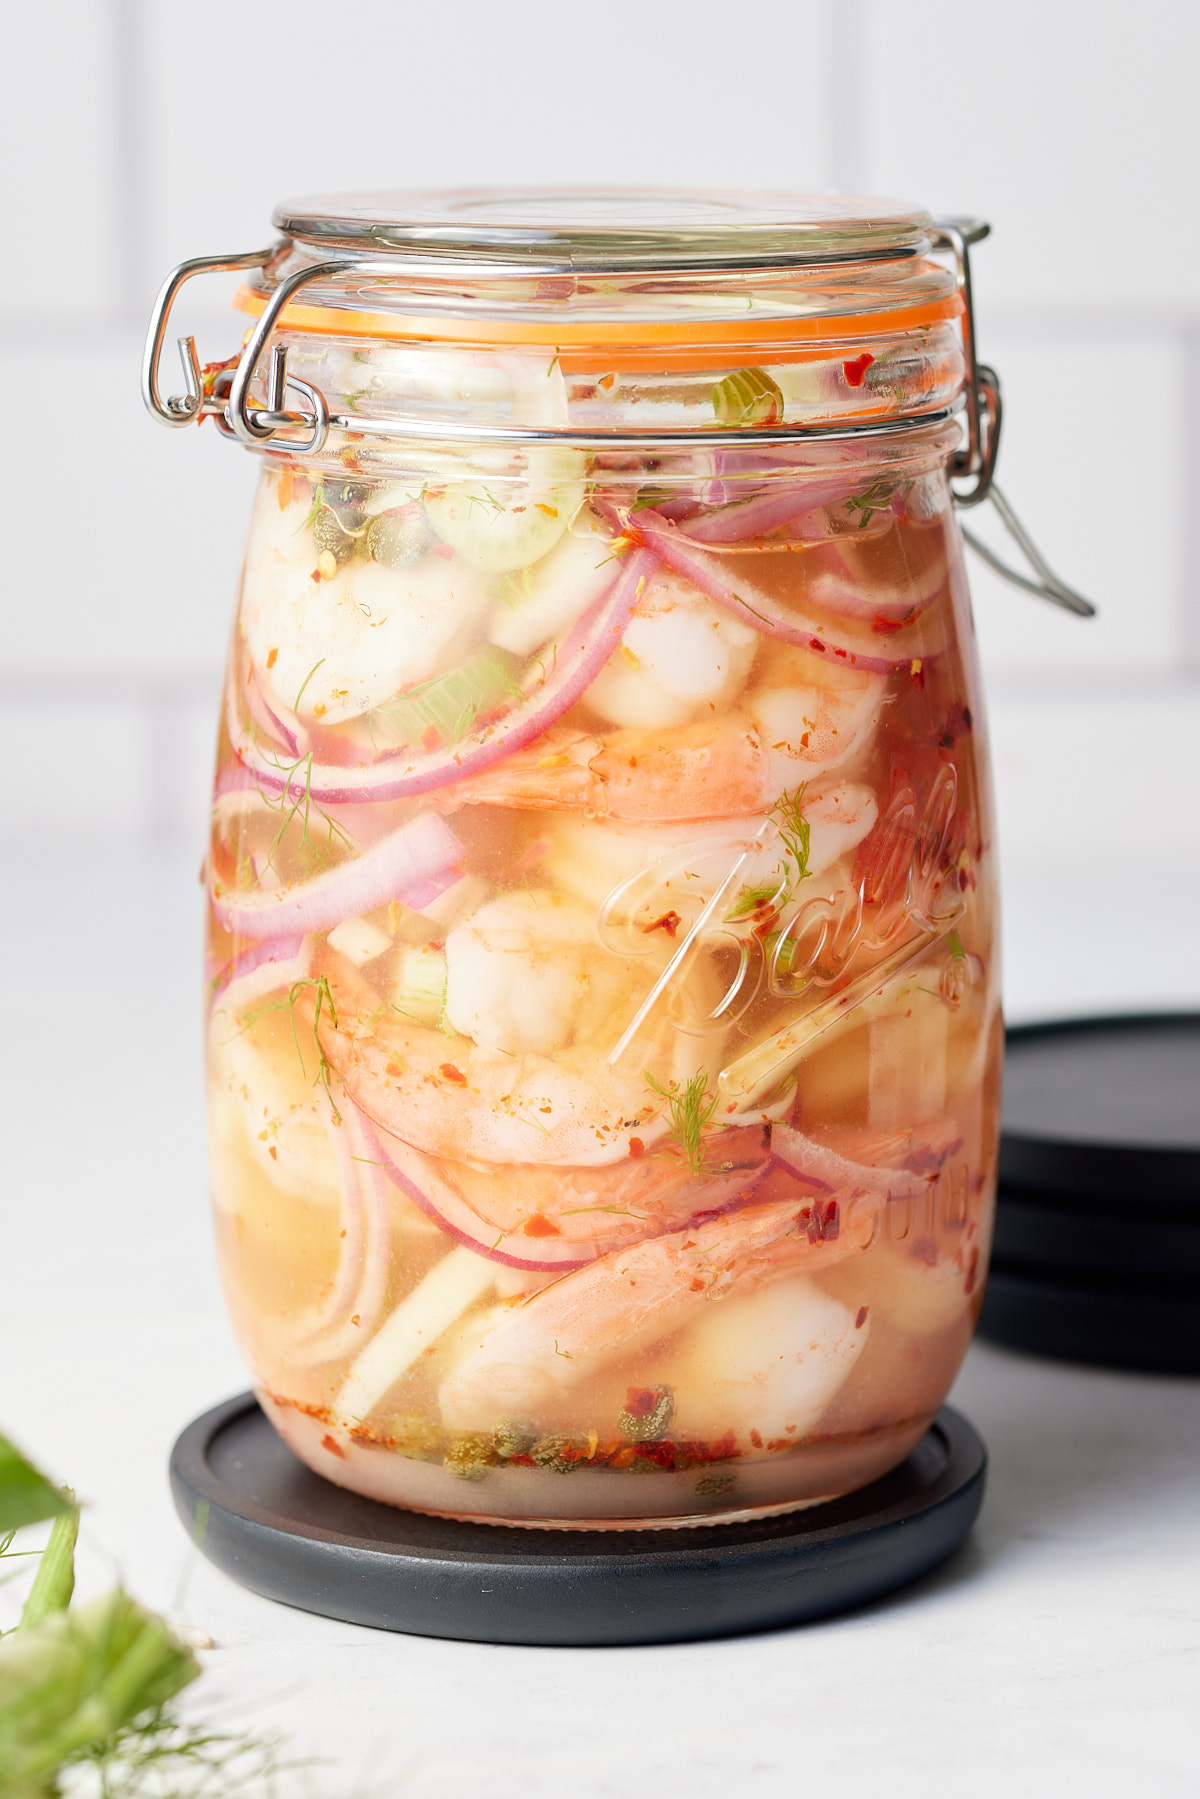 pickled shrimp in a jar